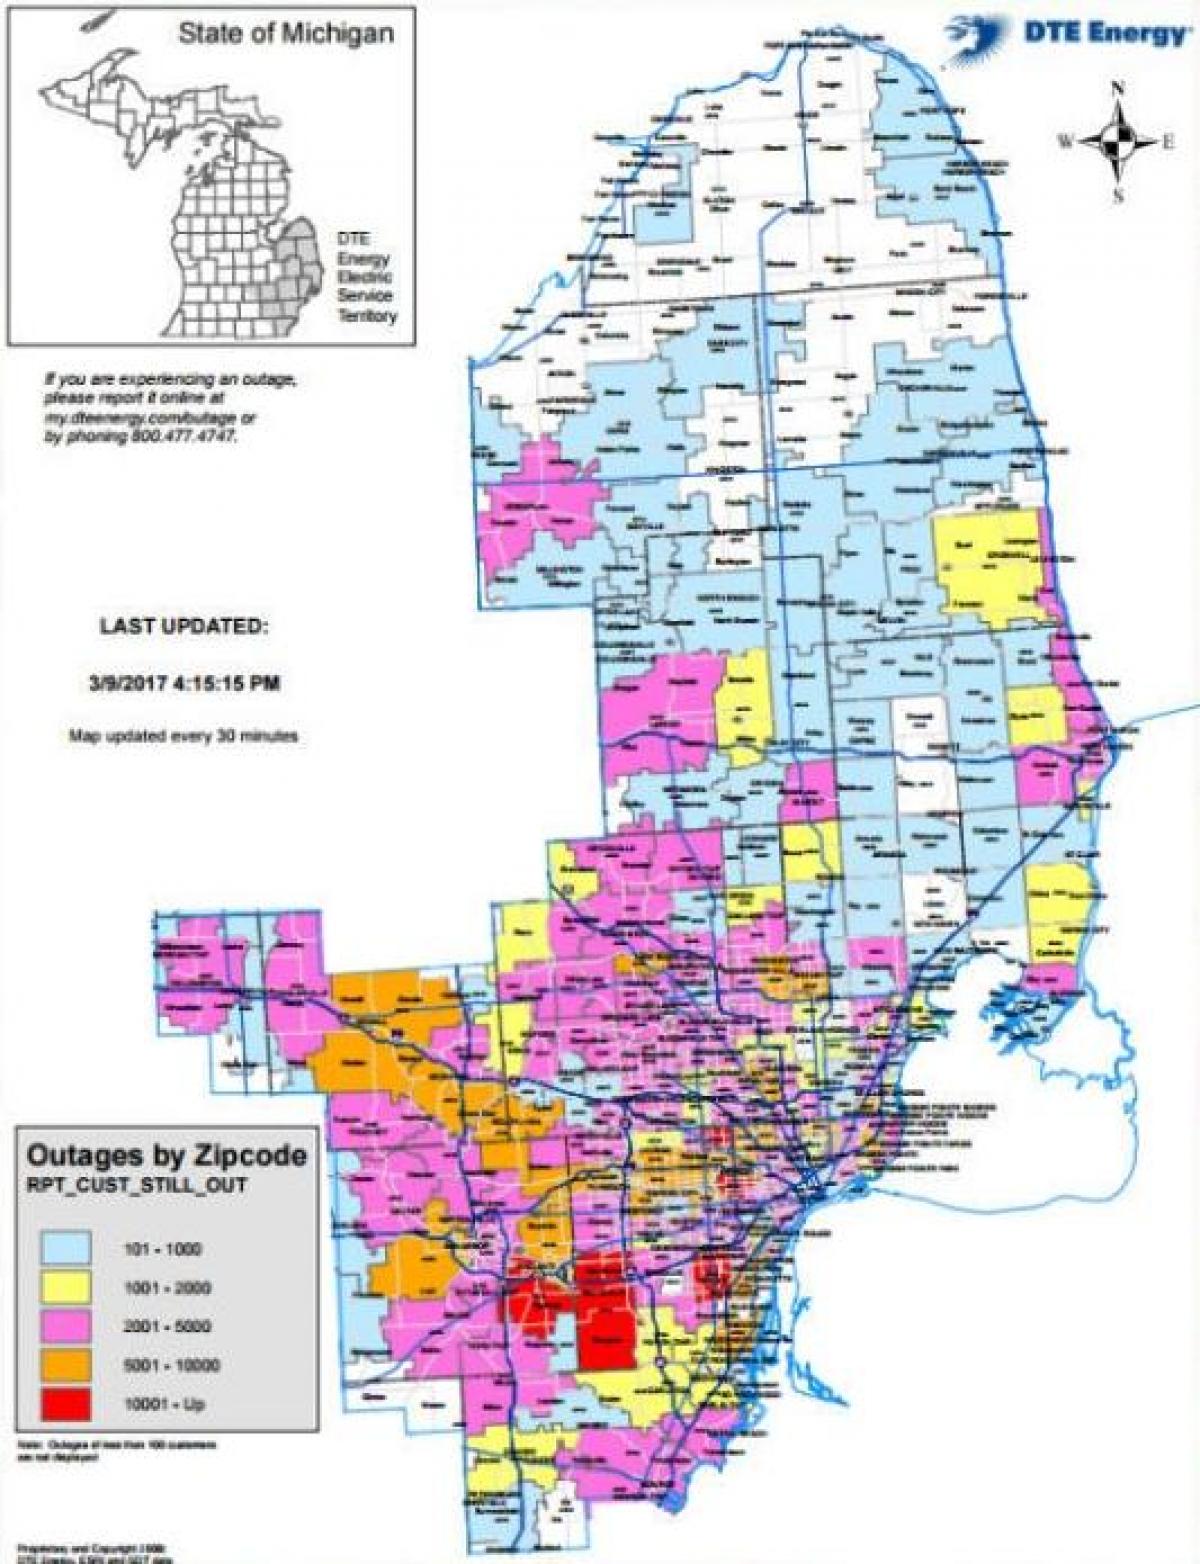 Detroit edison kuasa gangguan peta